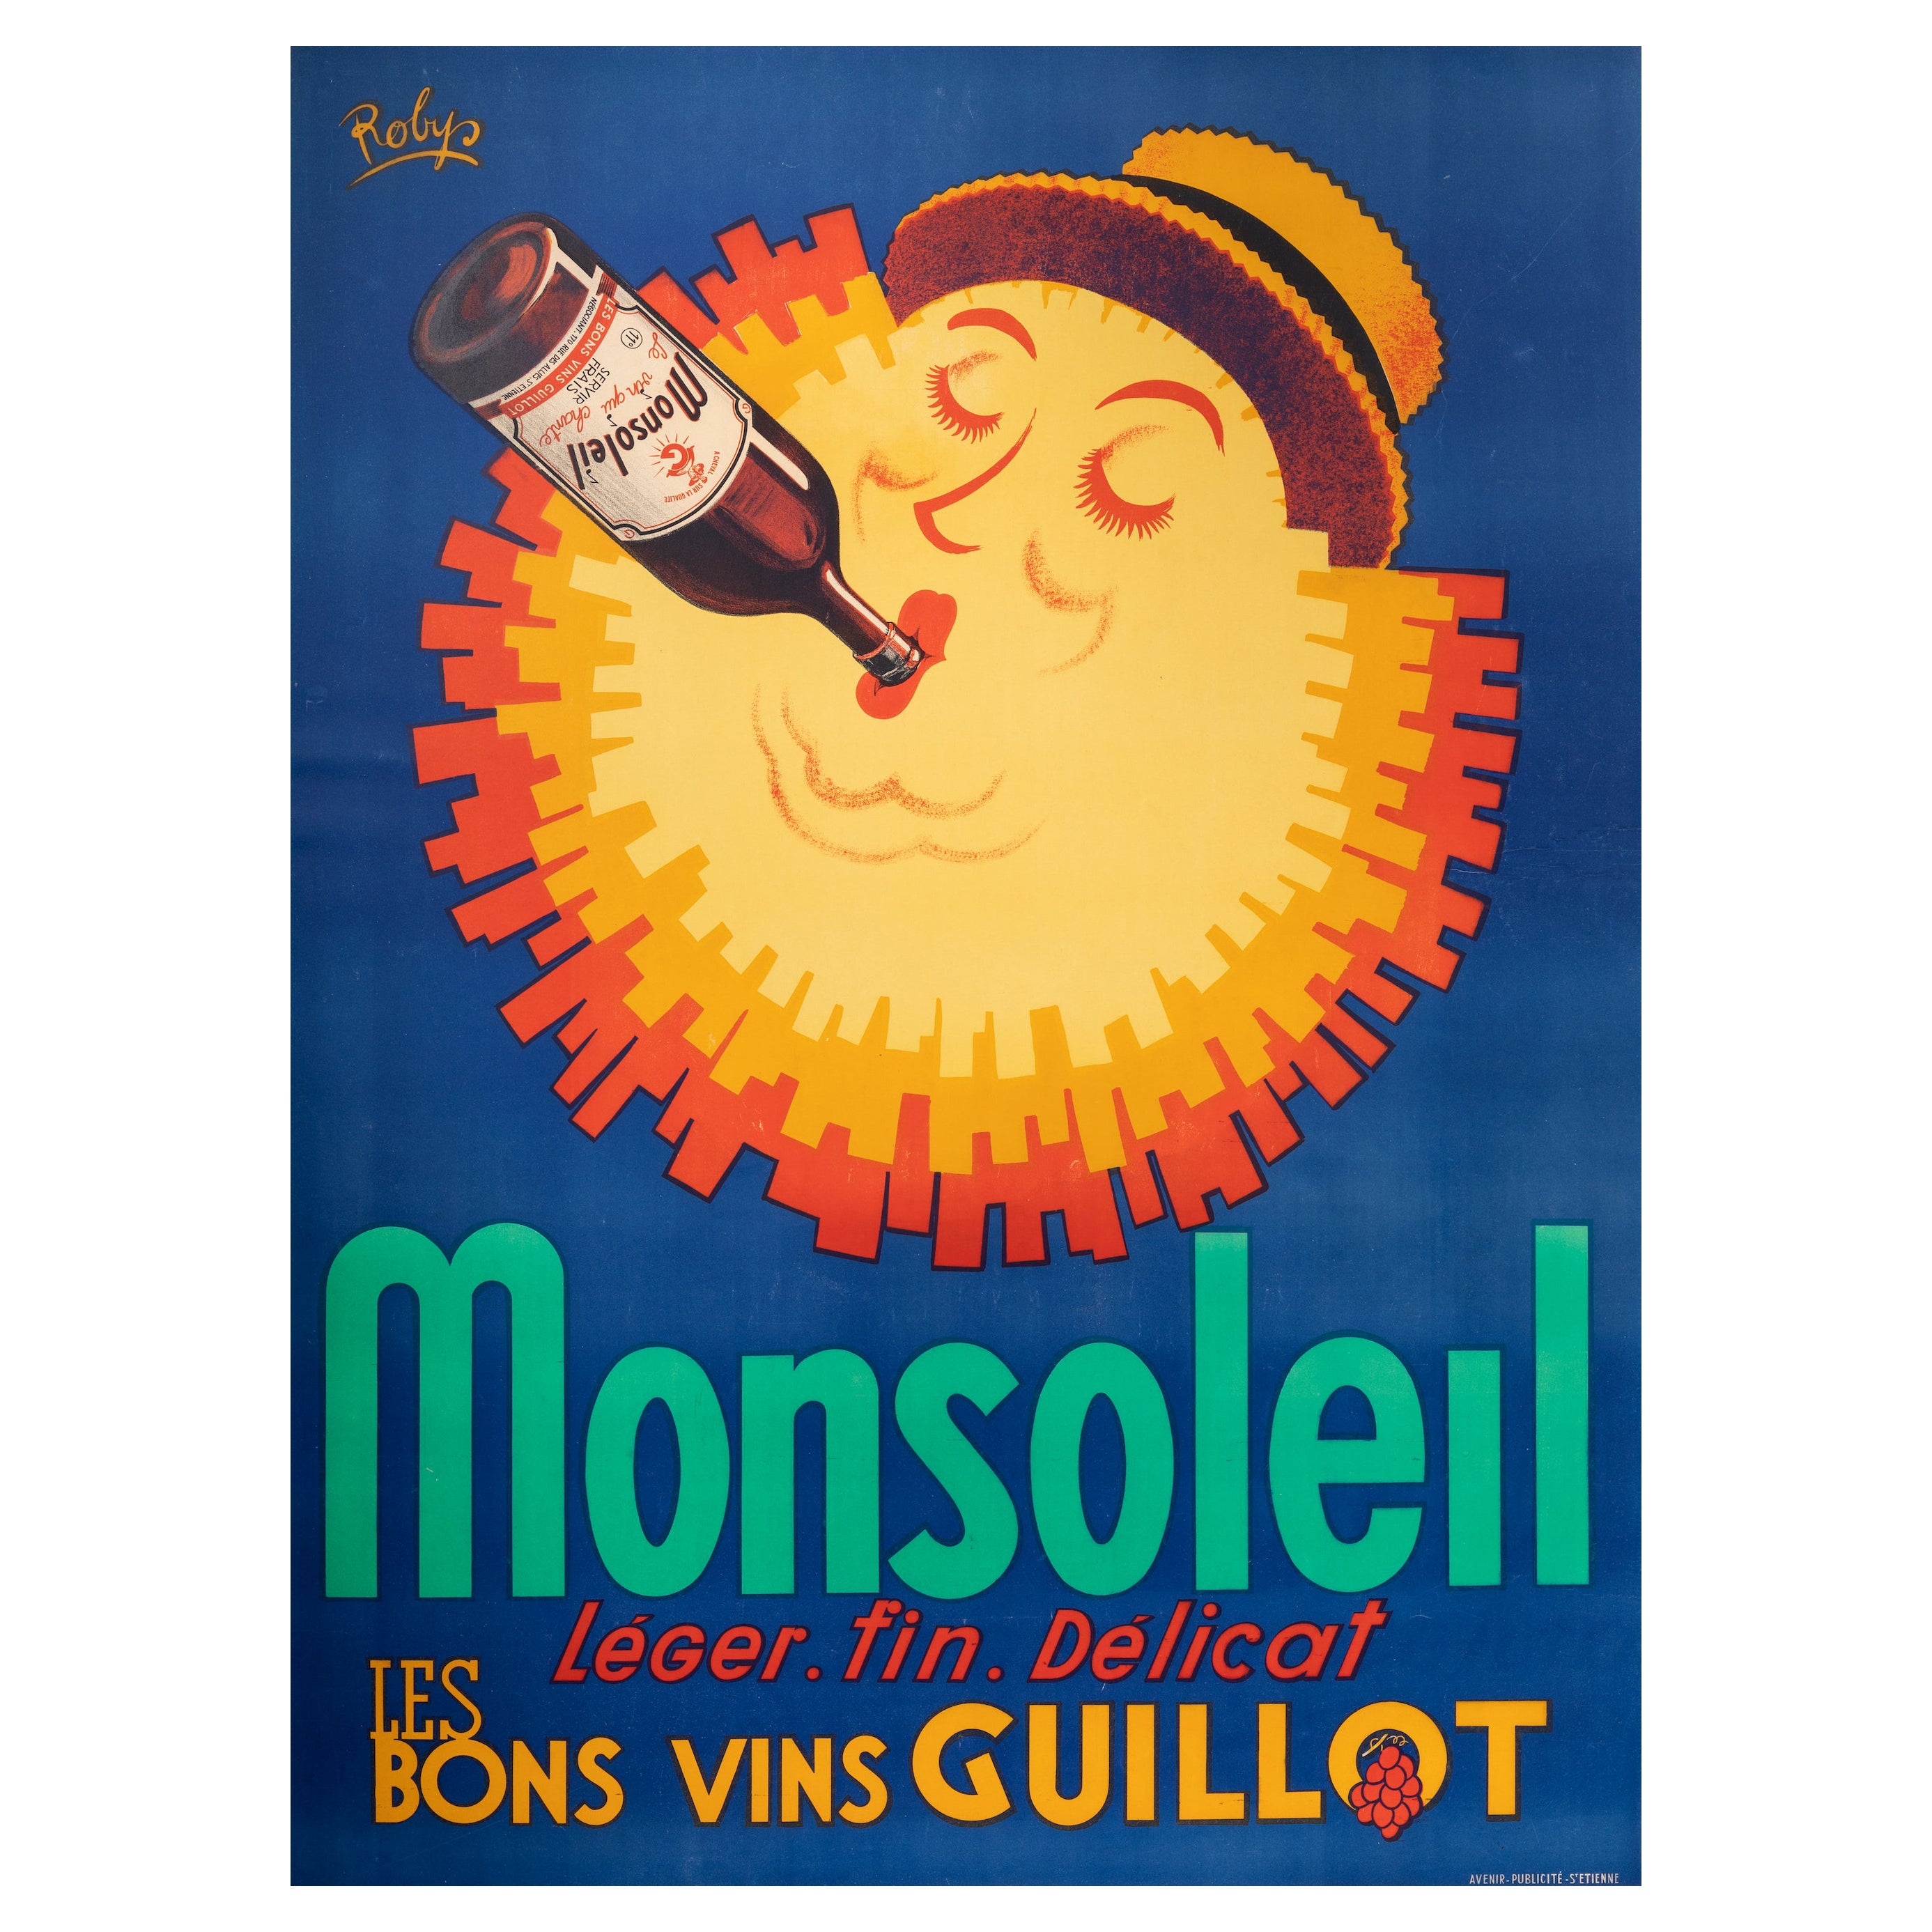 Original Vintage-Weinplakat von Robys, Monsoleil, Wein, Trauben, Hut, Sonne, 1940